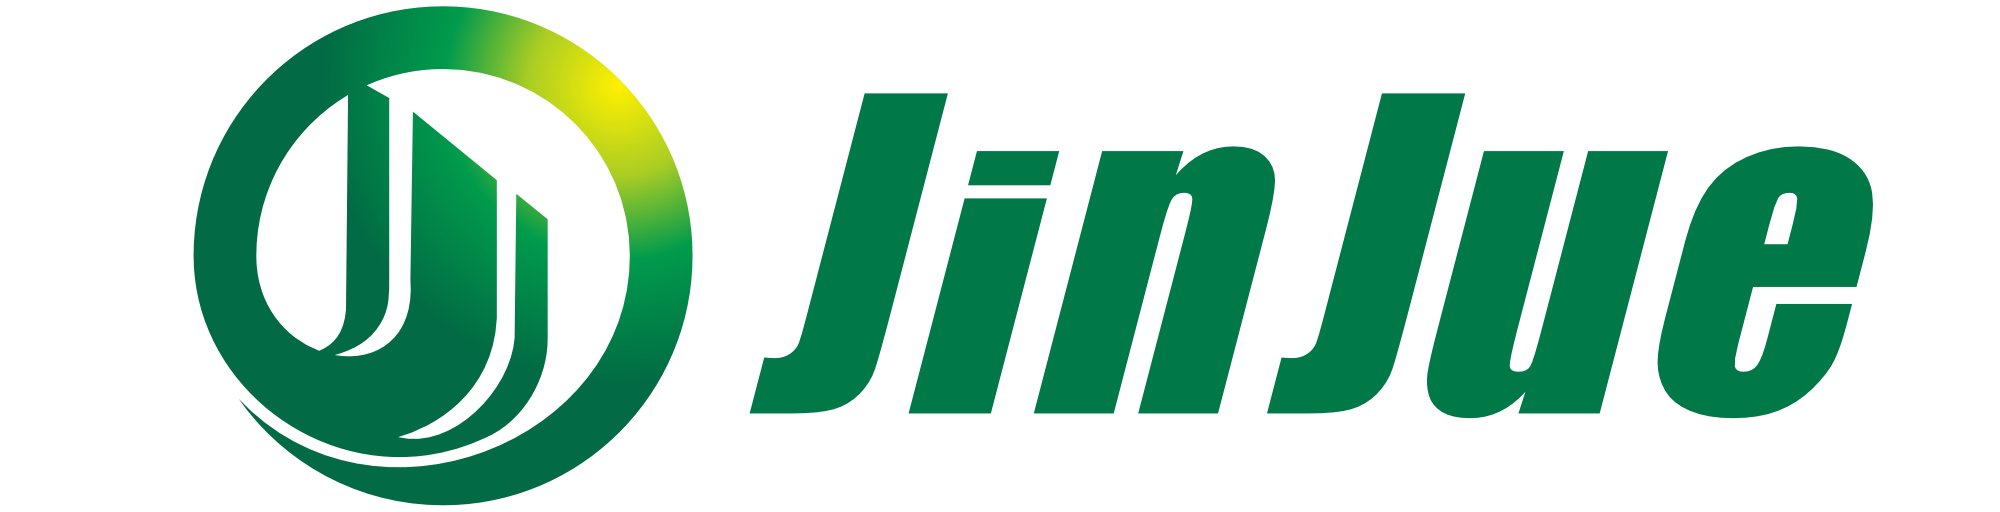 Filtro Jinjue Co., Ltd.